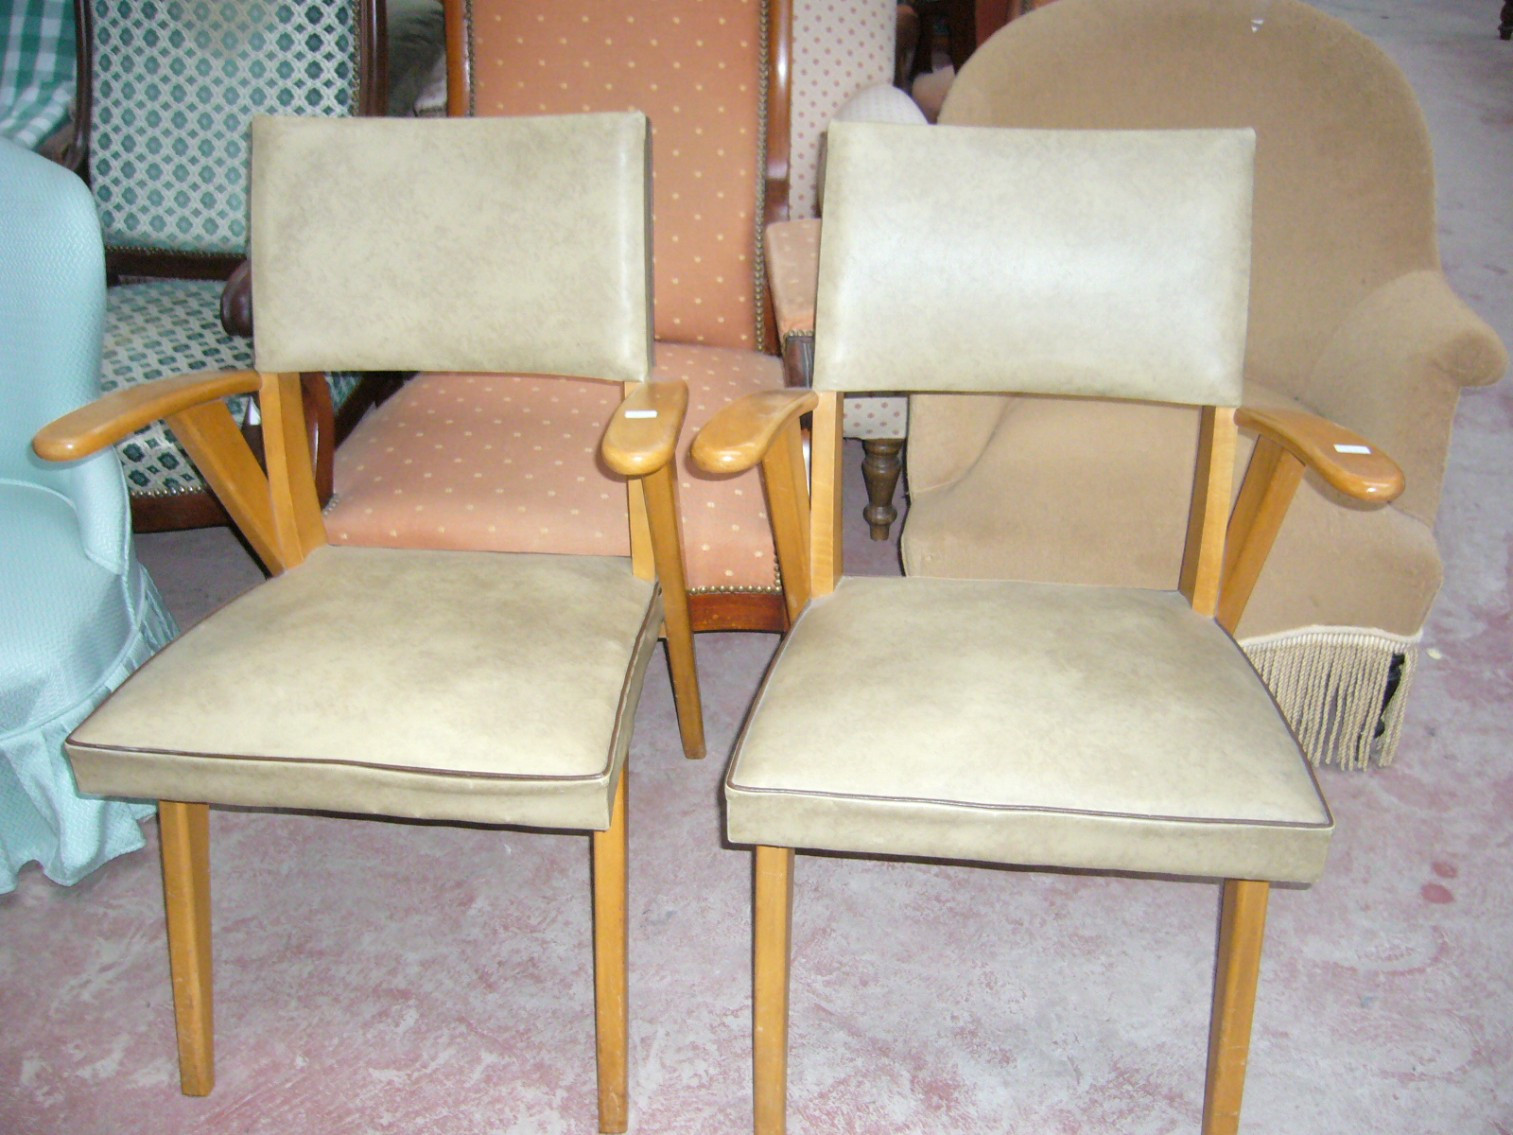 
                                                Meuble
                                                 Paire de petits fauteuils, promotion